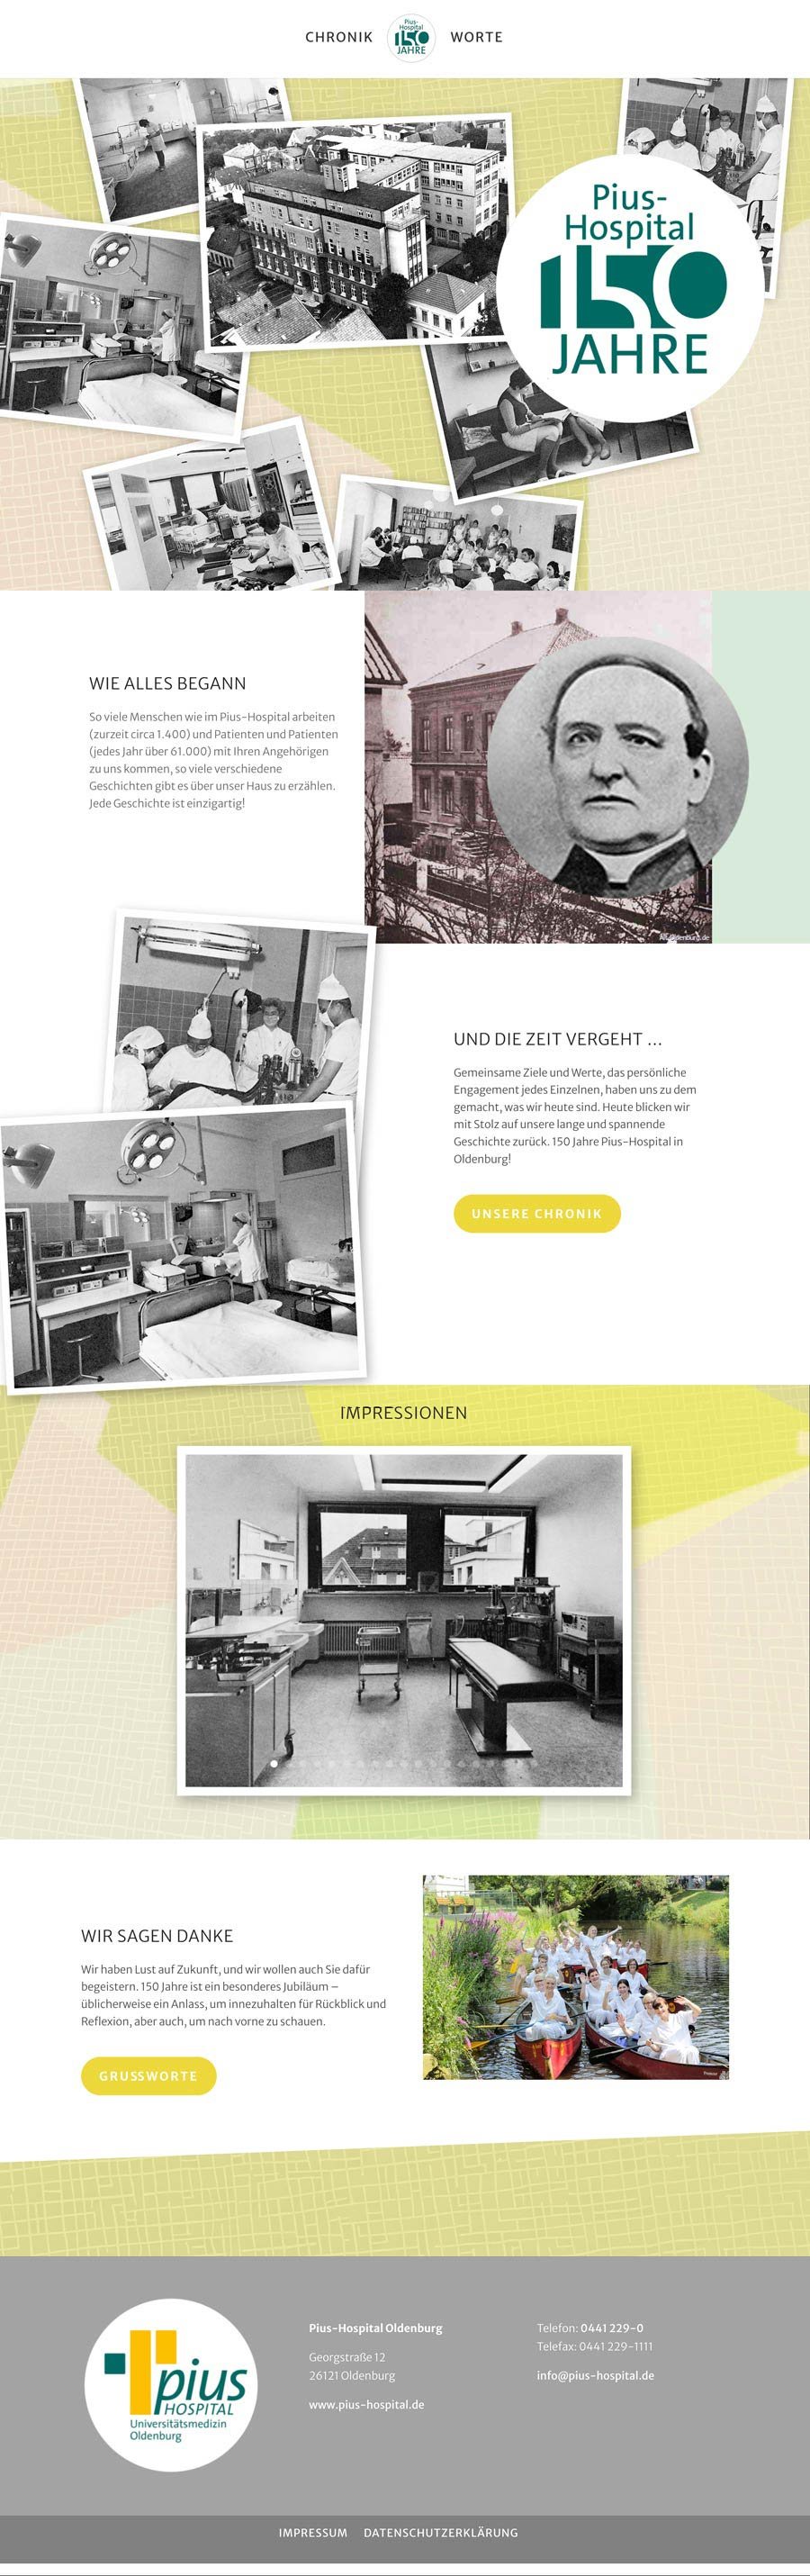 Startseite der Website zum Jubiläum 150 Jahre Pius-Hospital Oldenburg